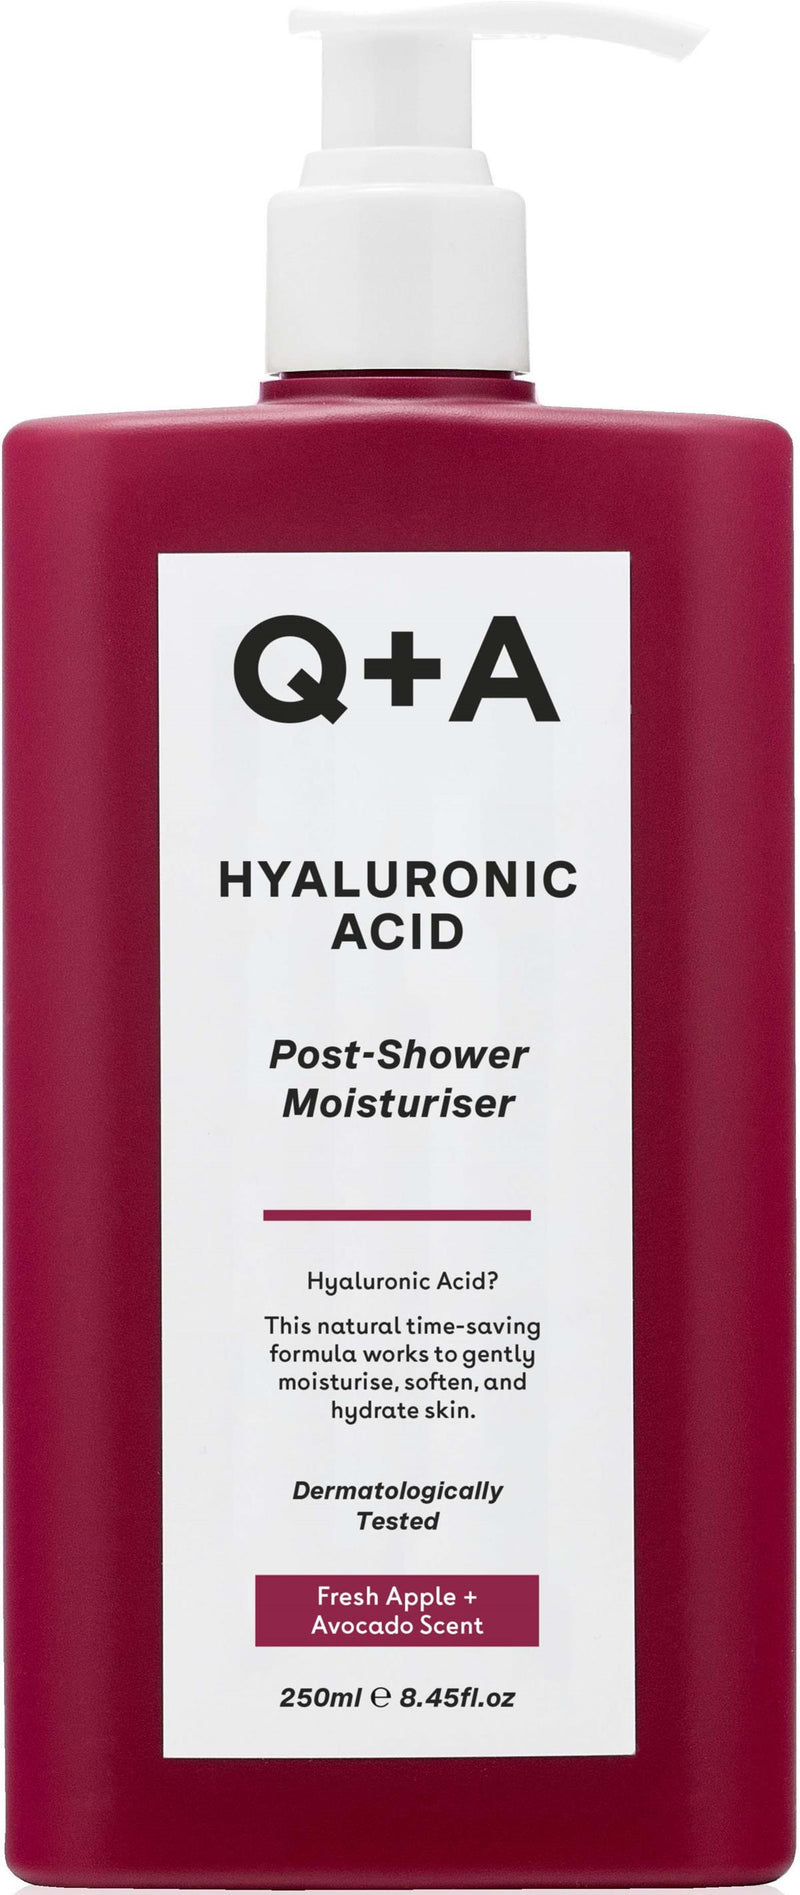 Q+A Hyaluronic Acid Post-Shower Moisturizer Увлажняющий крем для тела с гиалуроновой кислотой, 250мл